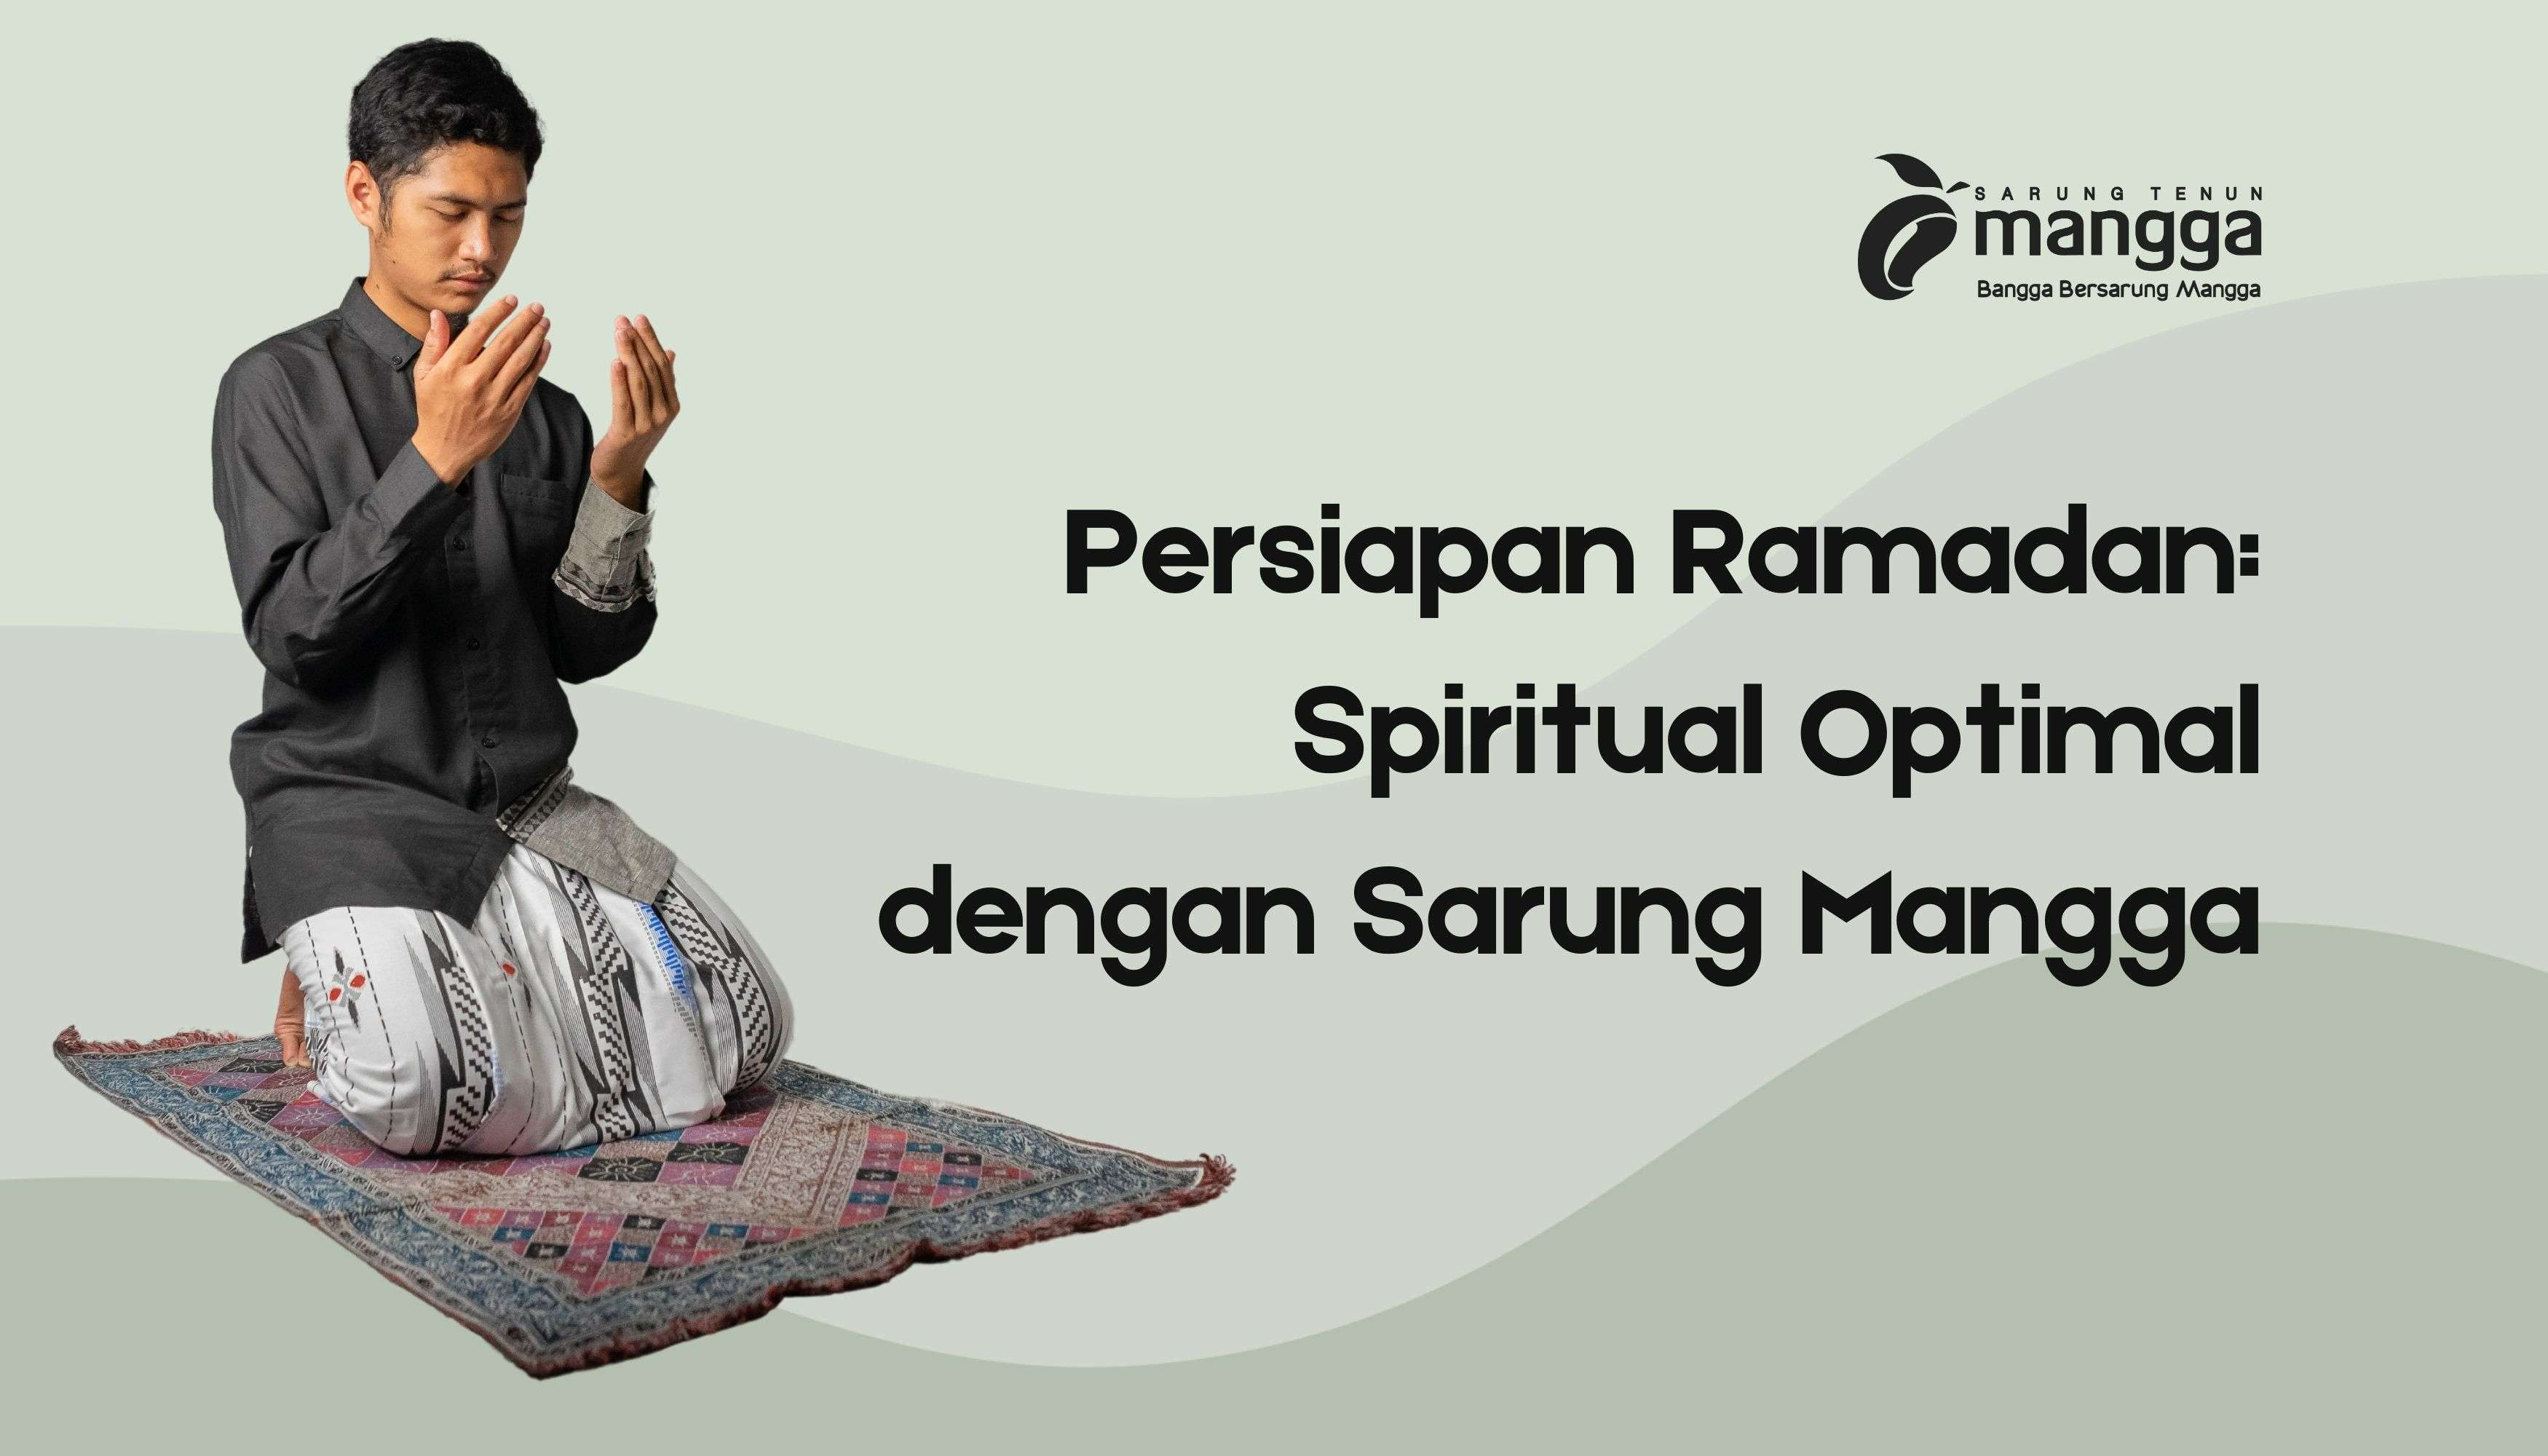 Persiapan Ramadan Spiritual Optimal dengan Sarung Mangga (1)